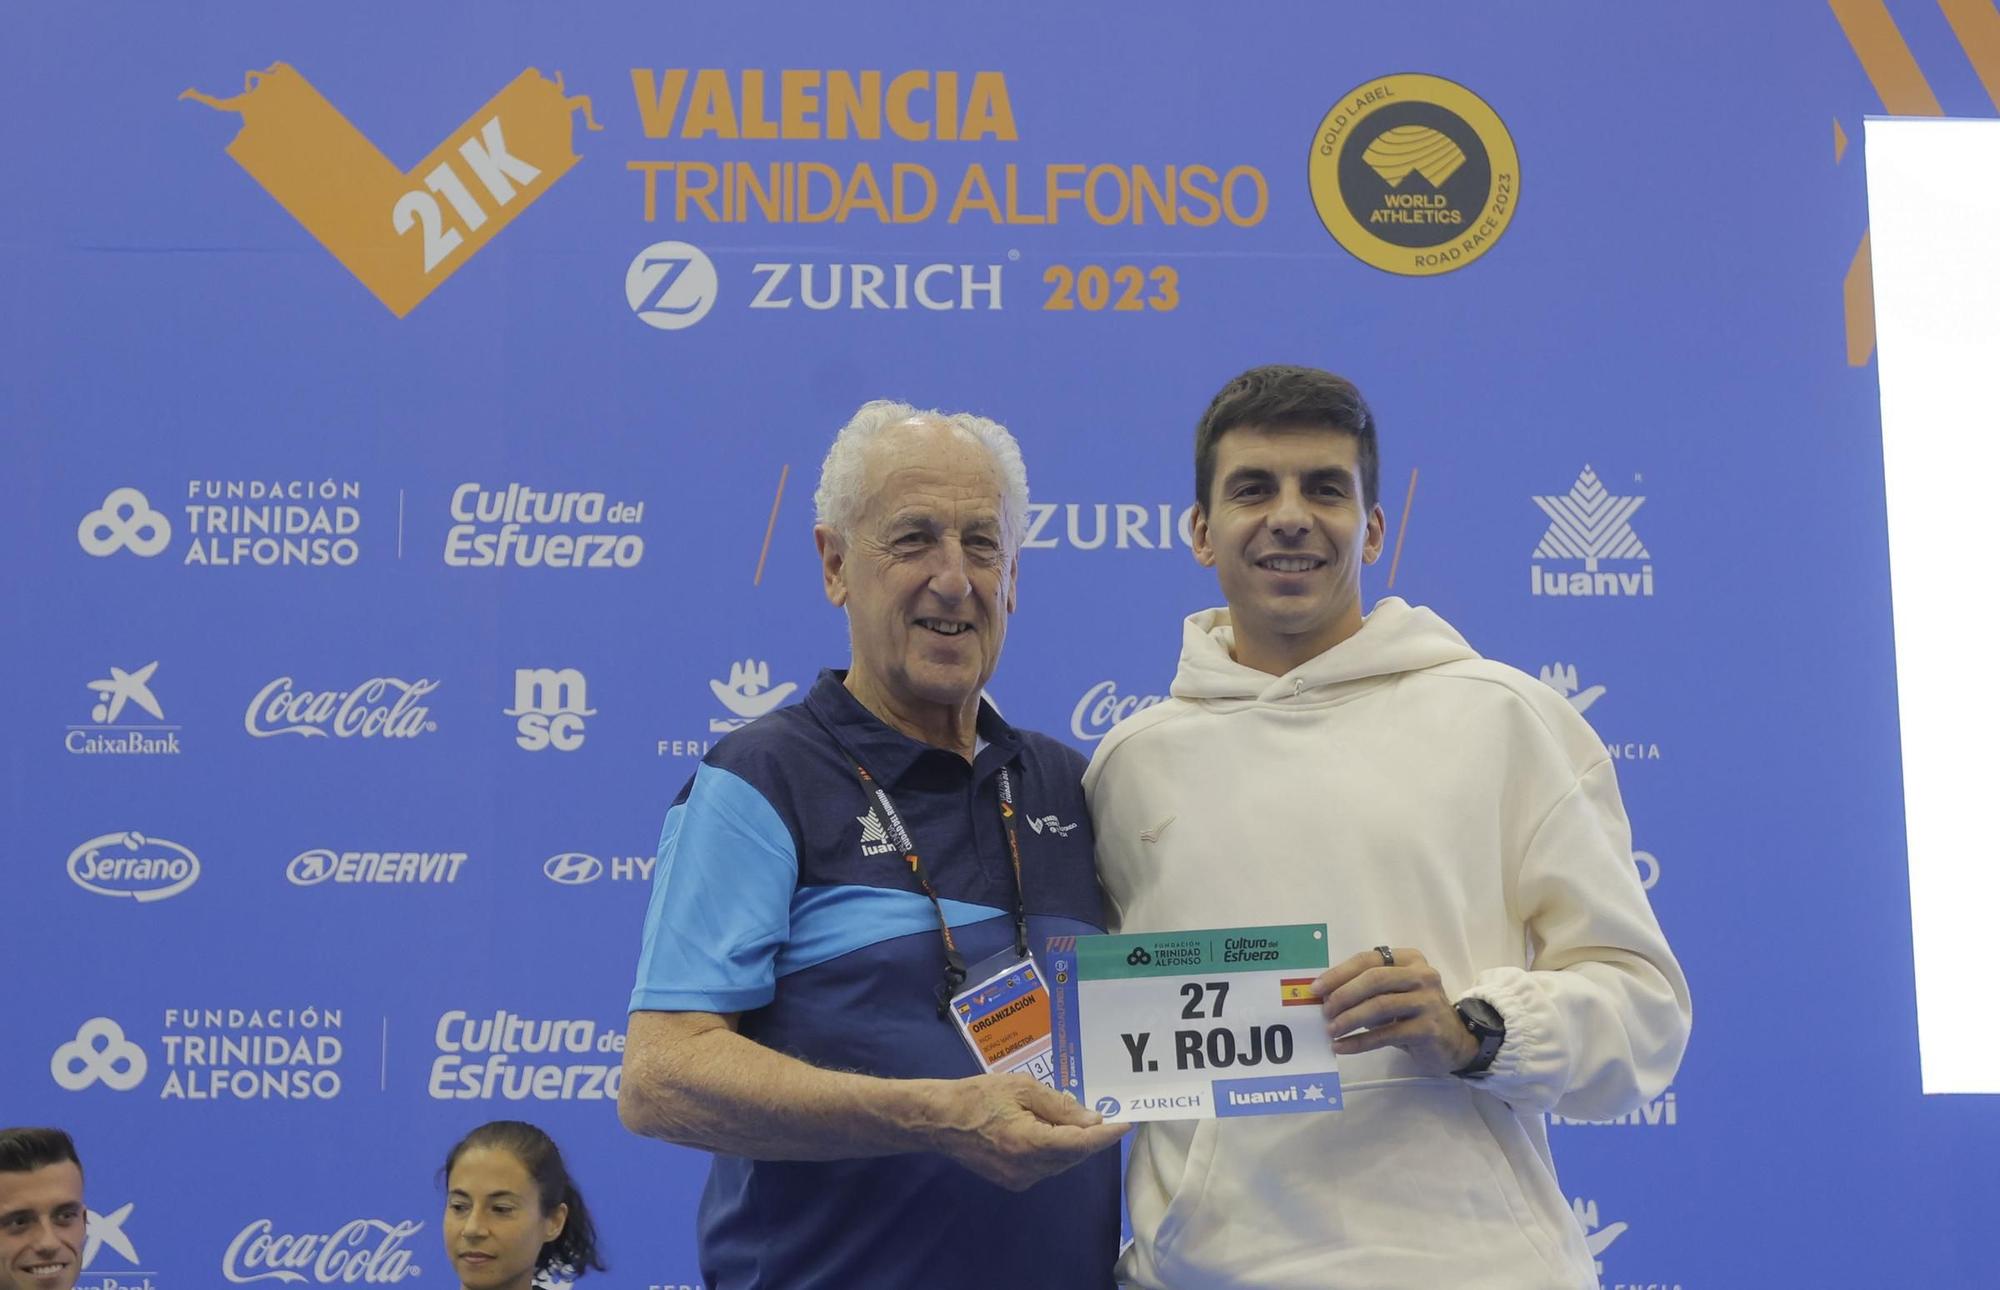 Feria del corredor de Medio Maratón Valencia Trinidad Alfonso Zurich 2023